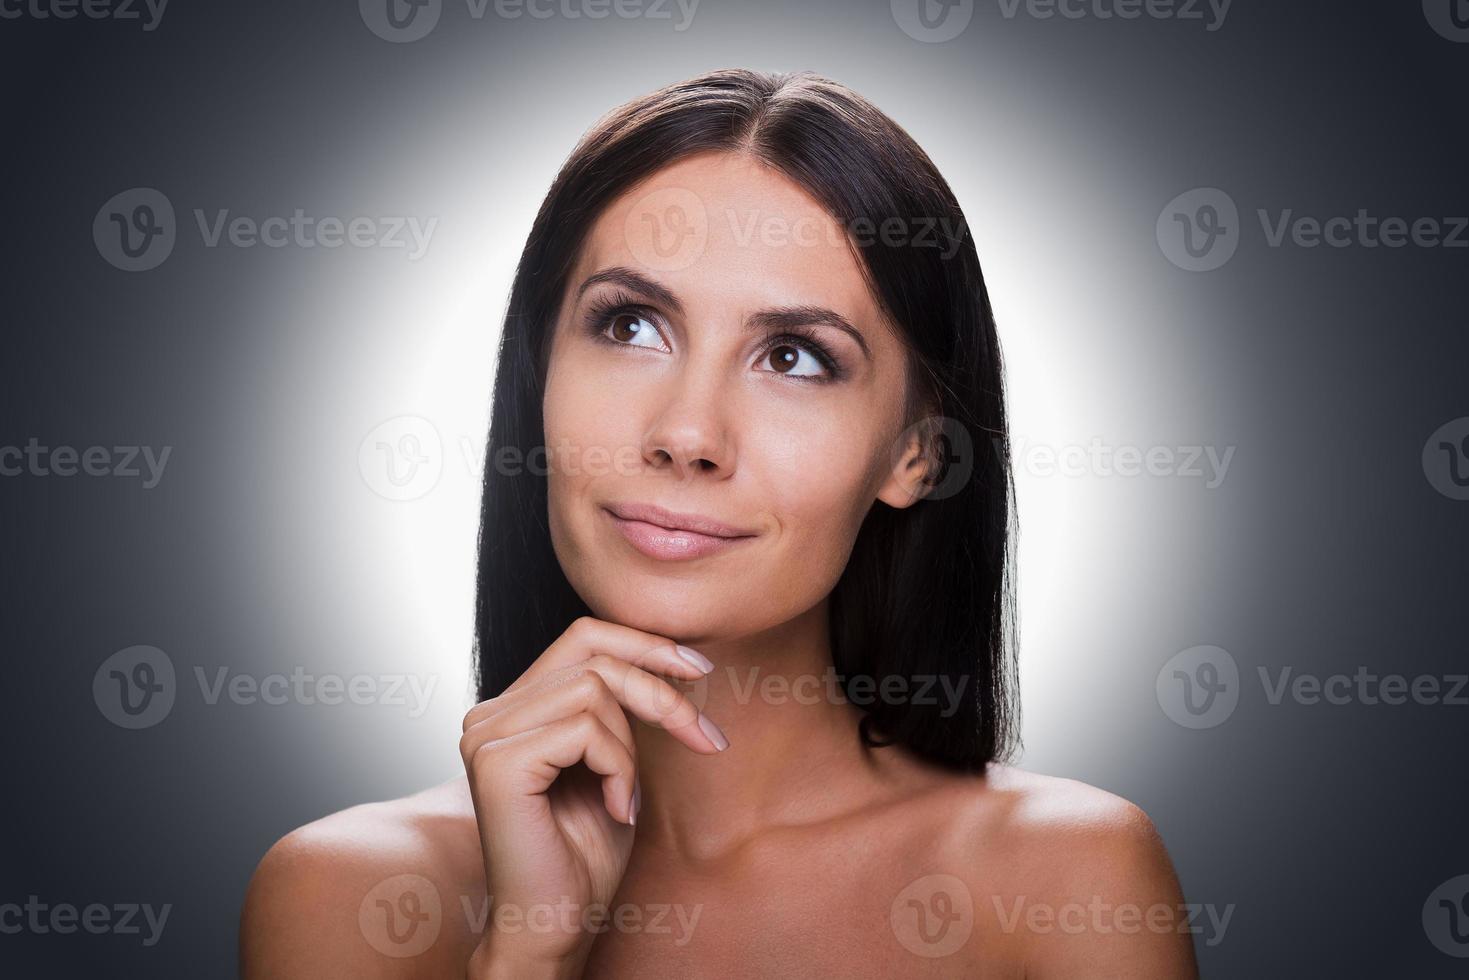 belleza pensativa. retrato de una joven pensativa sin camisa mirando hacia otro lado y sosteniendo la mano en la barbilla mientras se enfrenta a un fondo gris foto